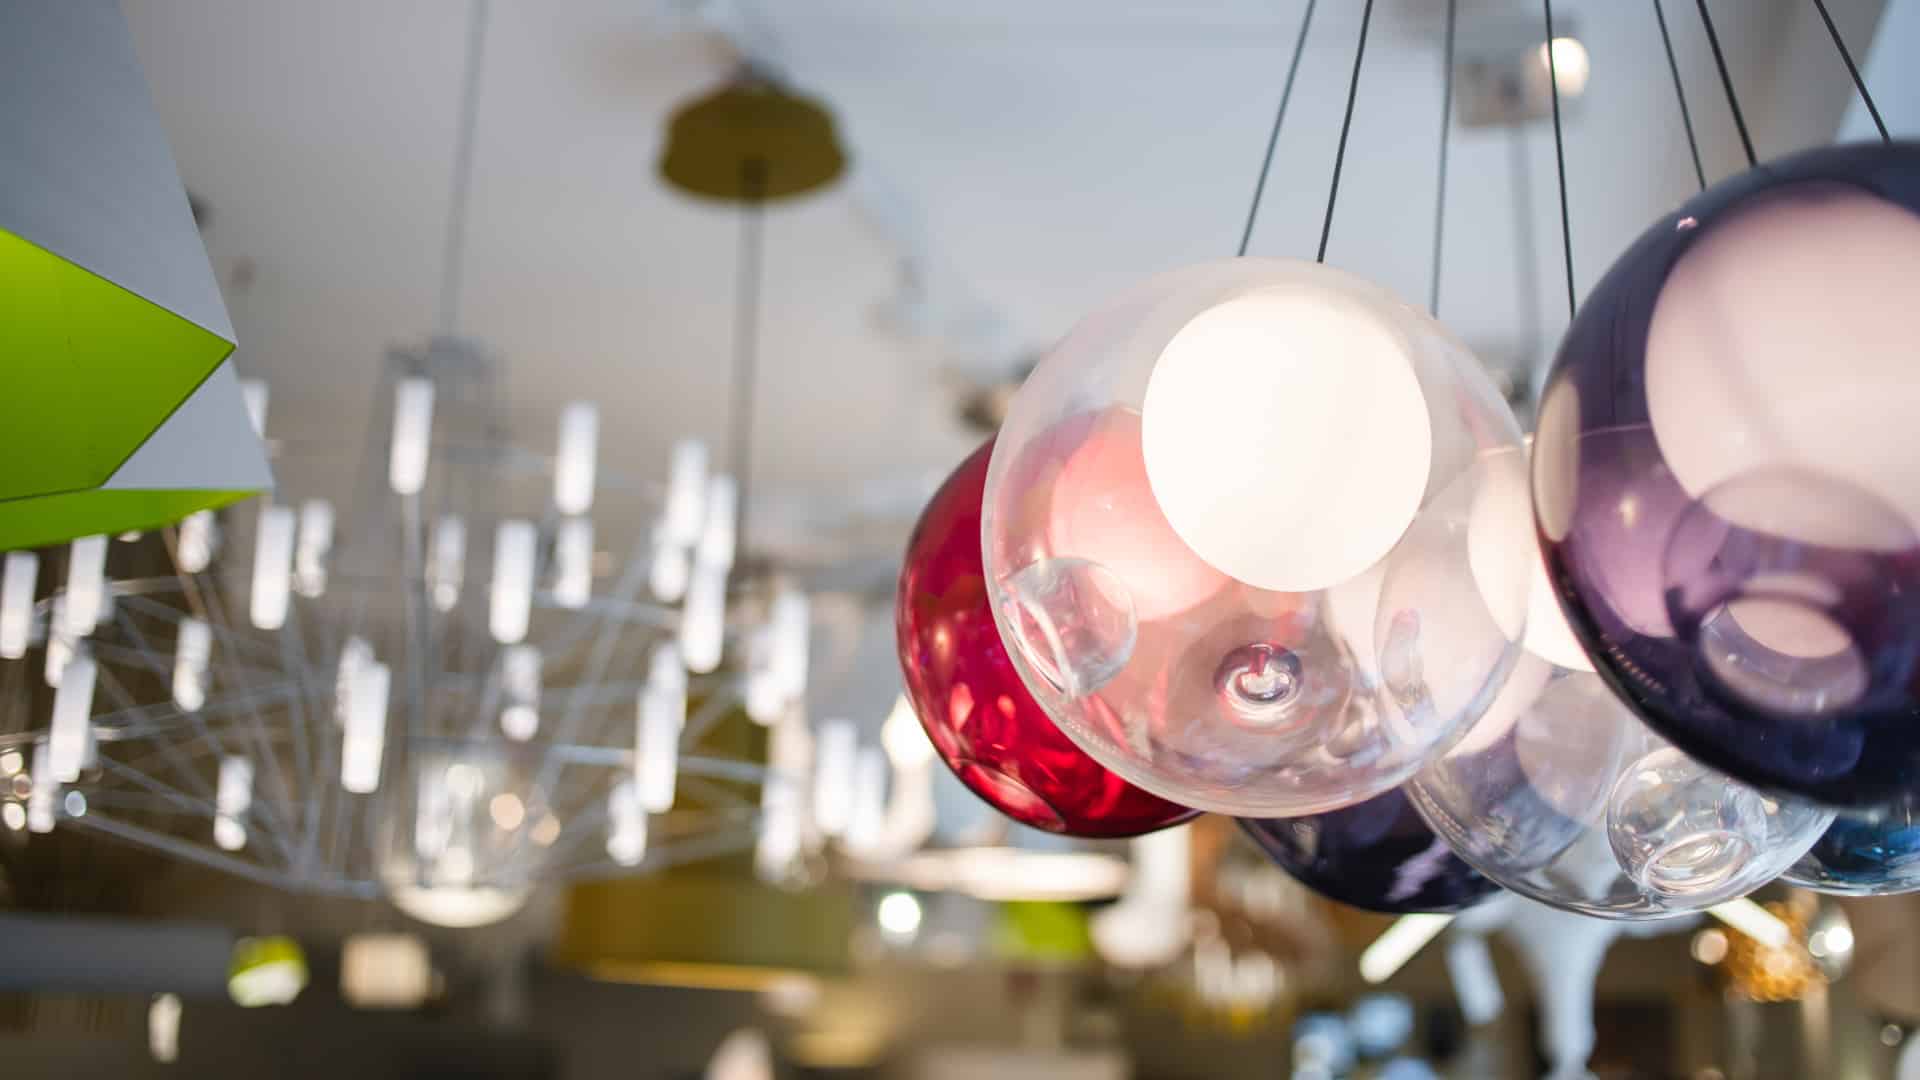 Photograph of lighting retailer Bulb, in Philadelphia, PA